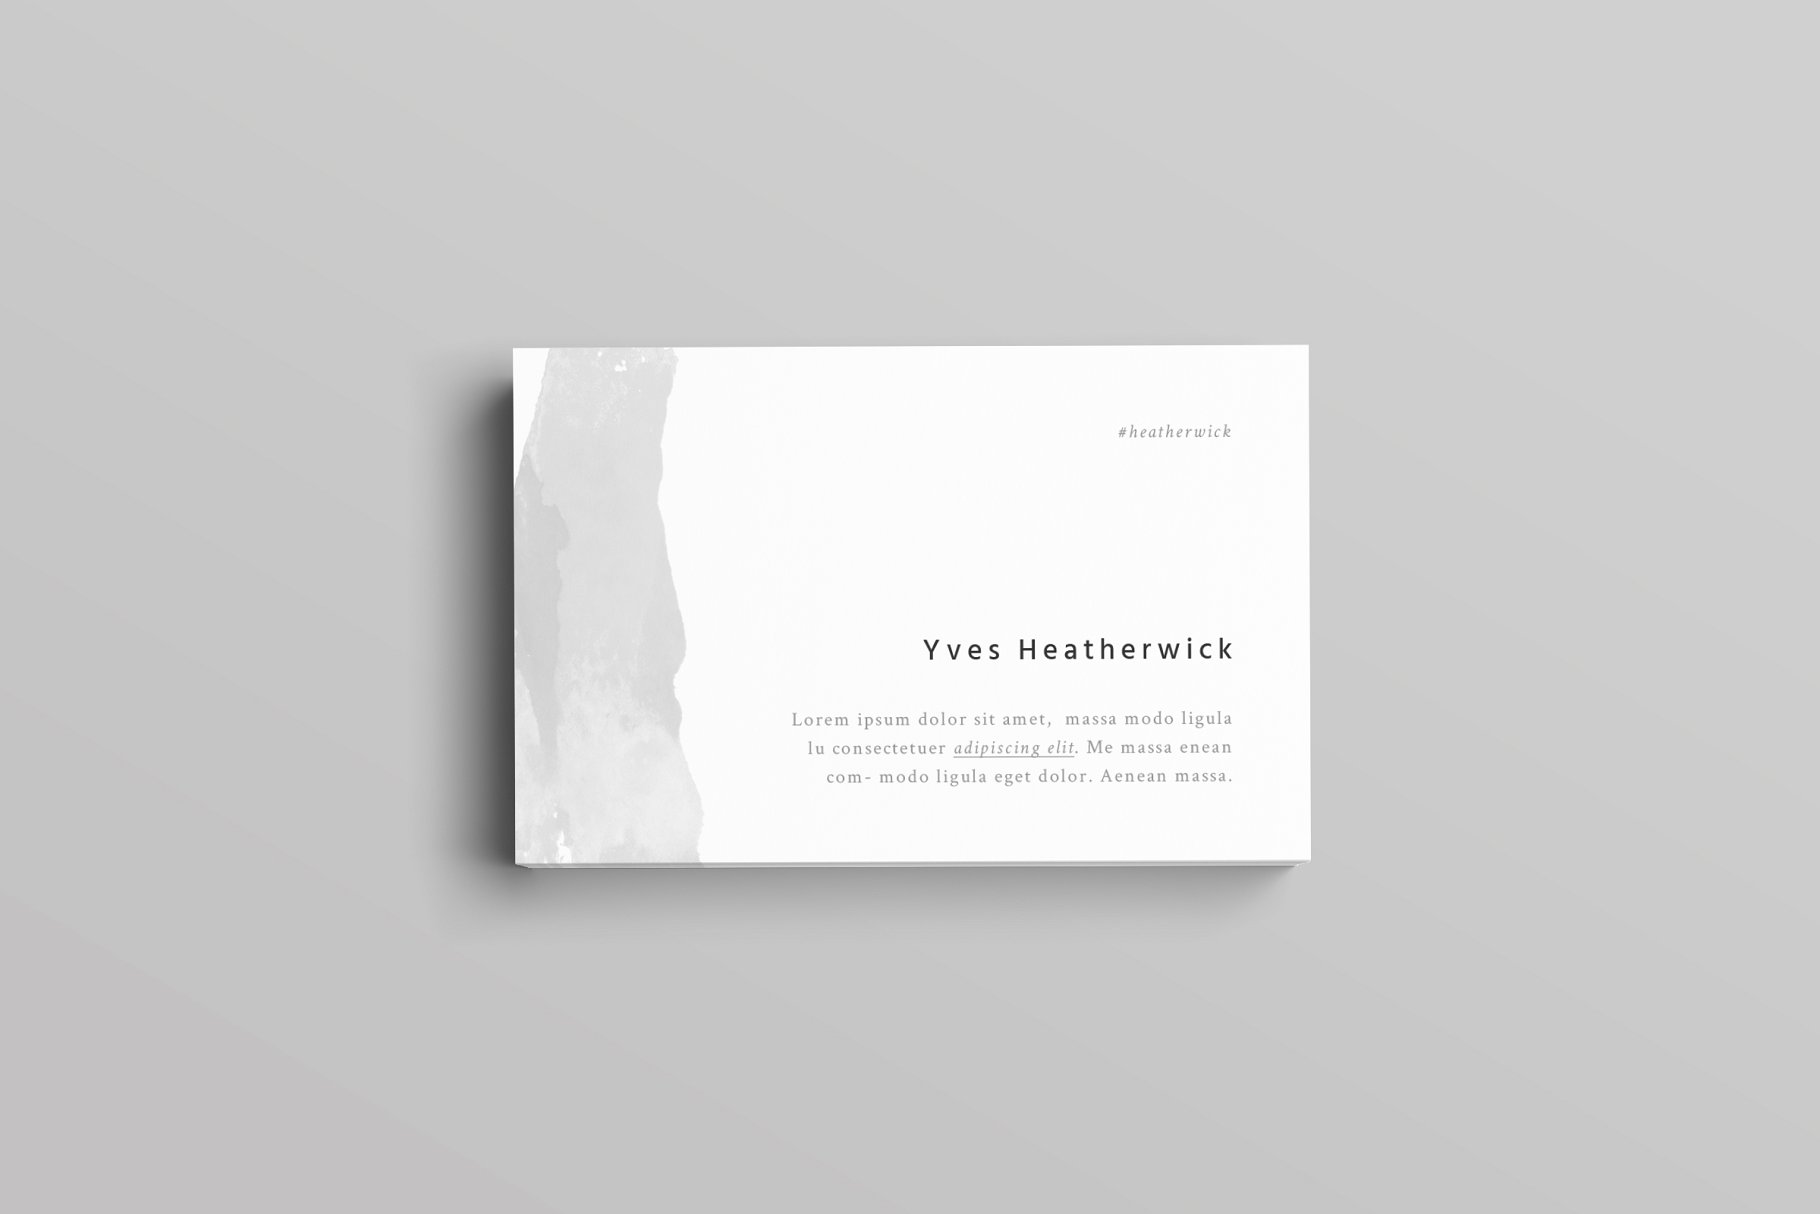 极简主义设计风格企业名片设计模板 Heatherwick Business Card Template插图3